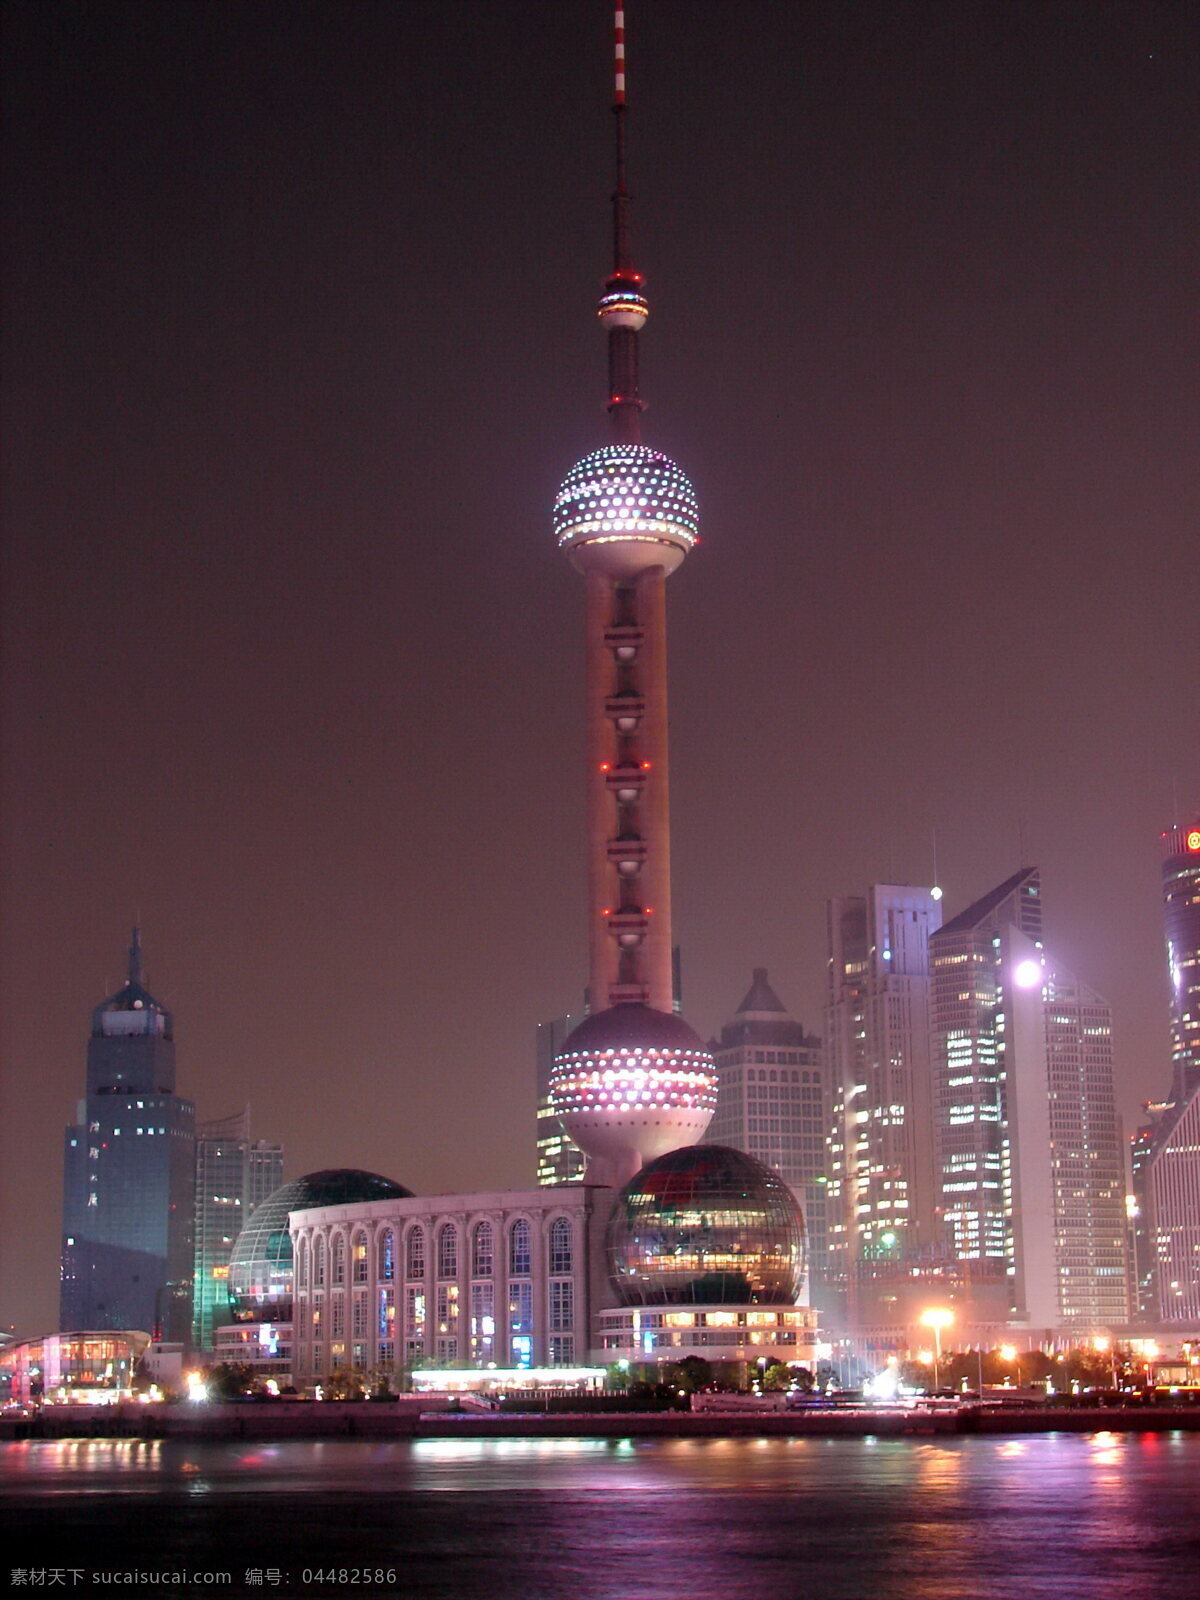 上海 夜景 度假休闲 城市 建筑 高楼 大厦 休闲度假 城市夜景 上海夜景 东方明珠塔 灯影 建筑景观 海 旅游摄影 城市风光 环境家居